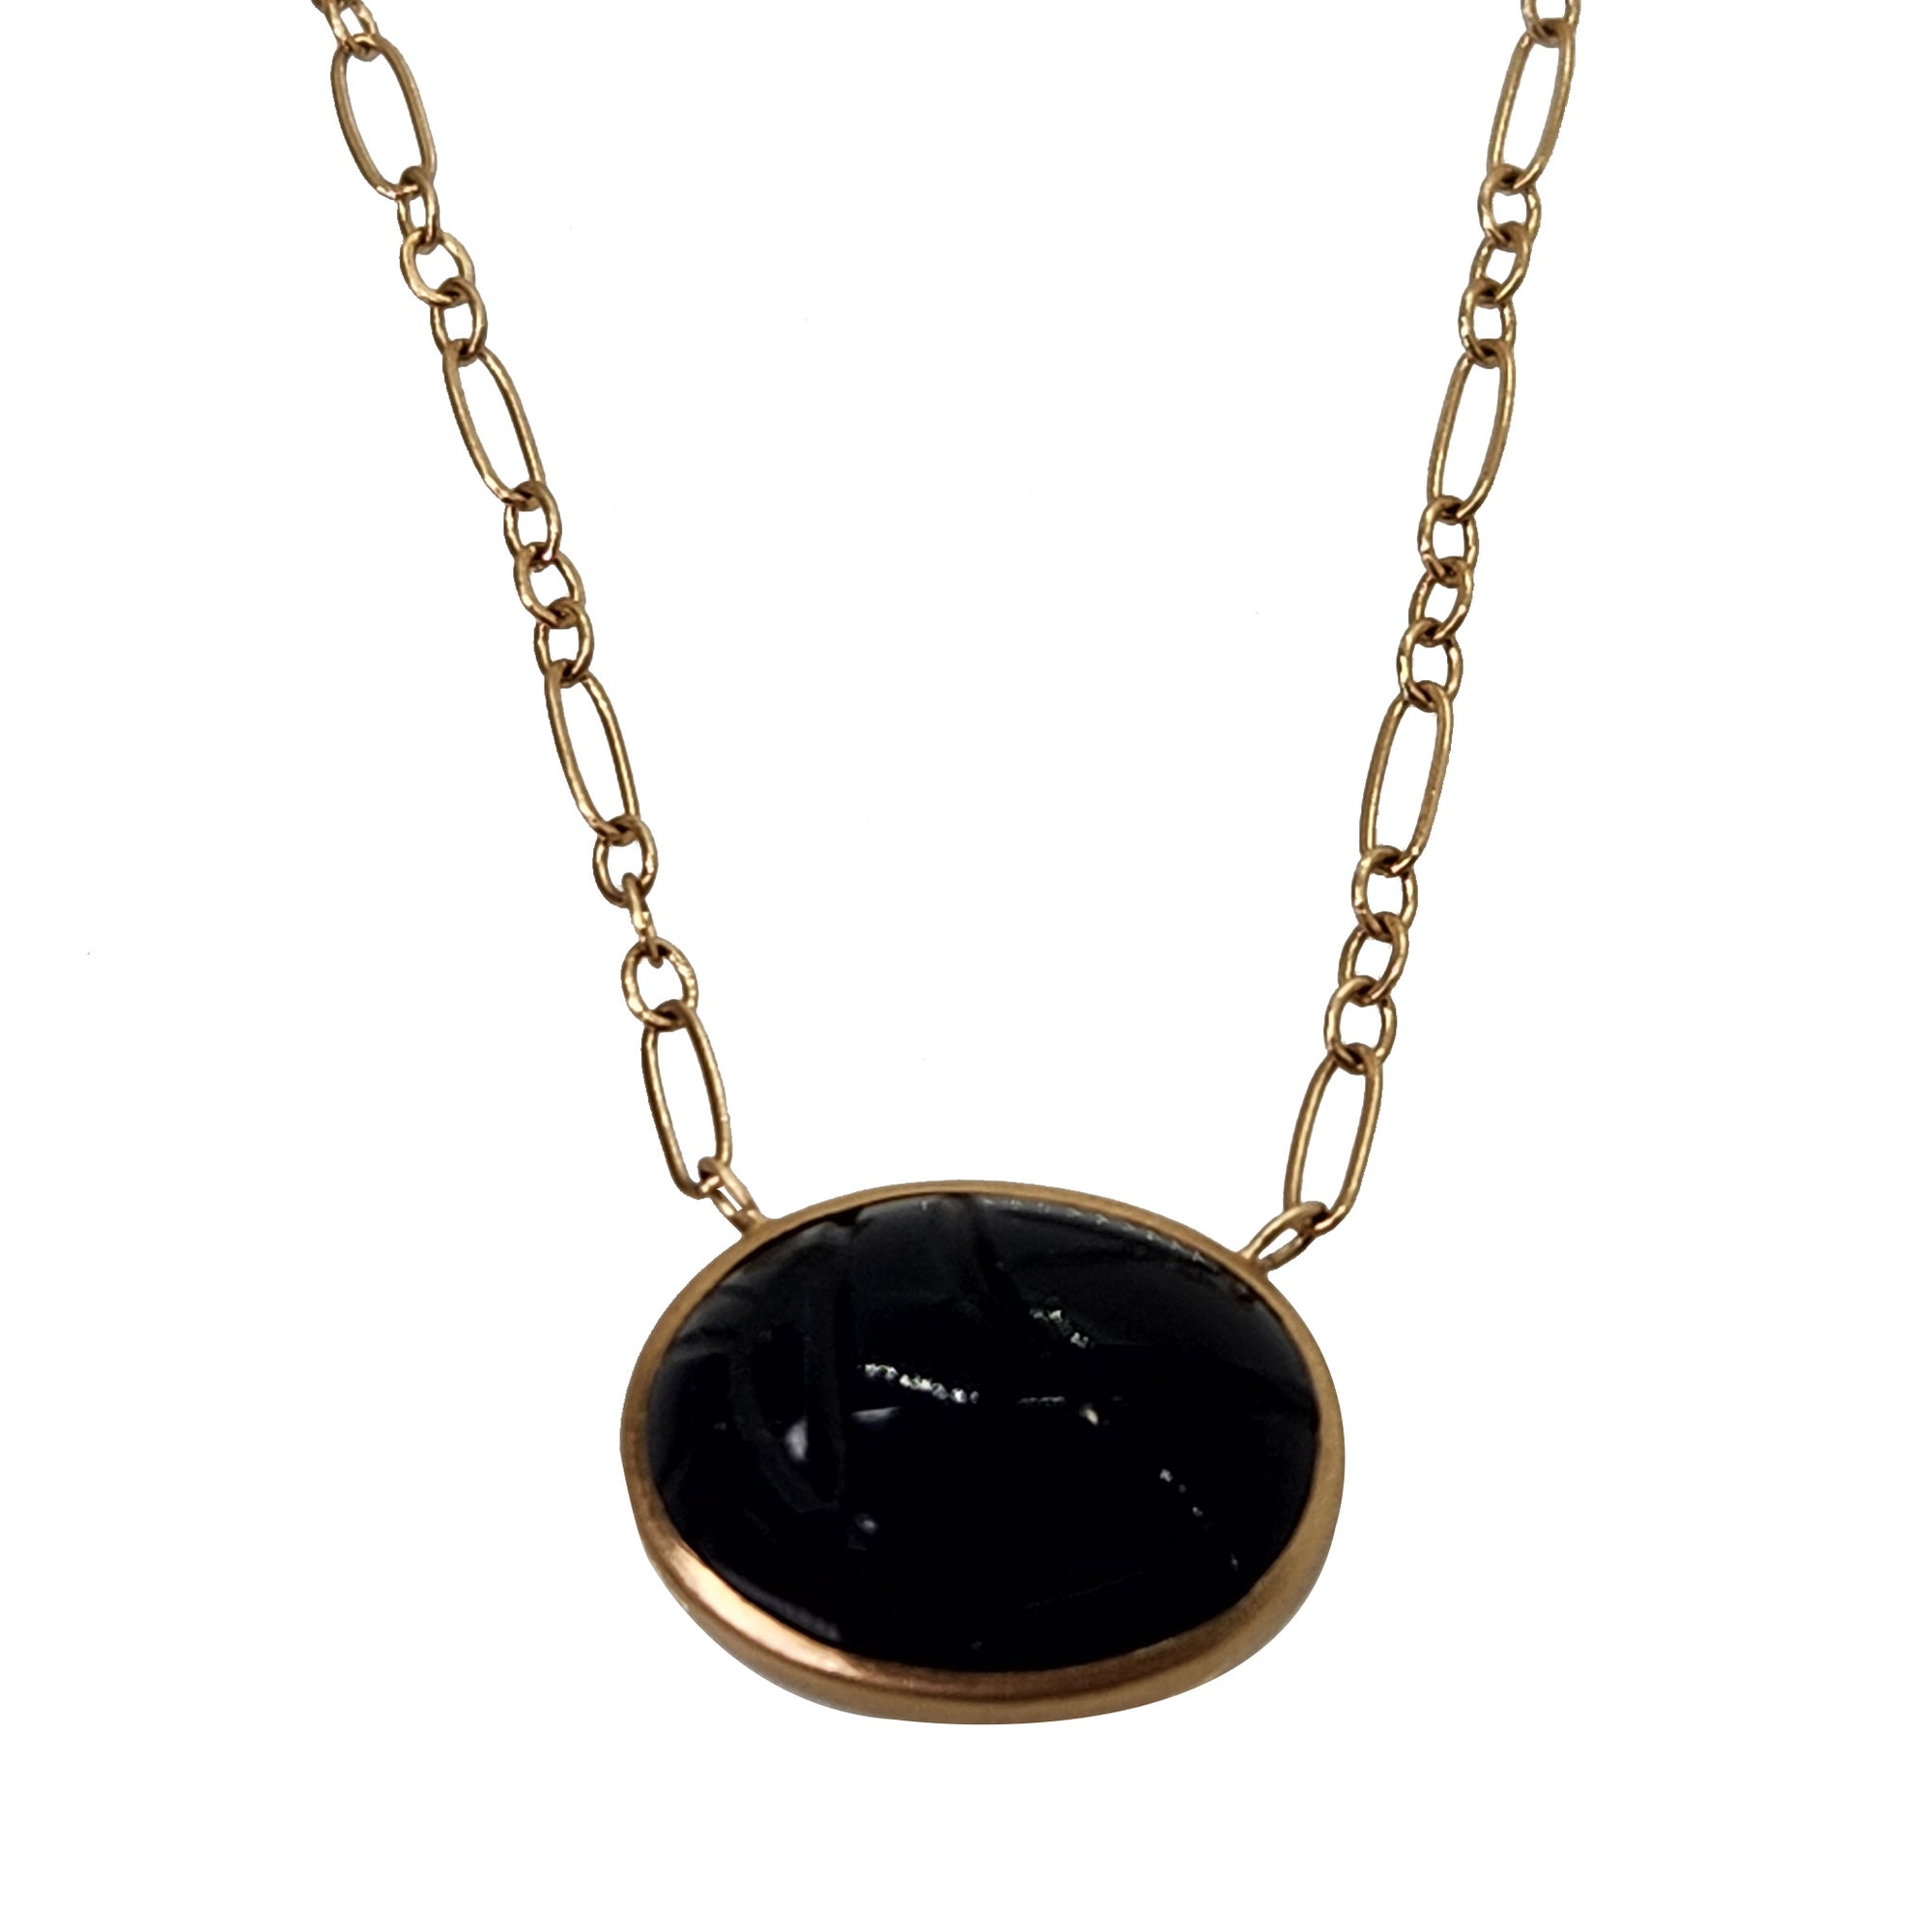 OOAK Black Onyx + Necklace